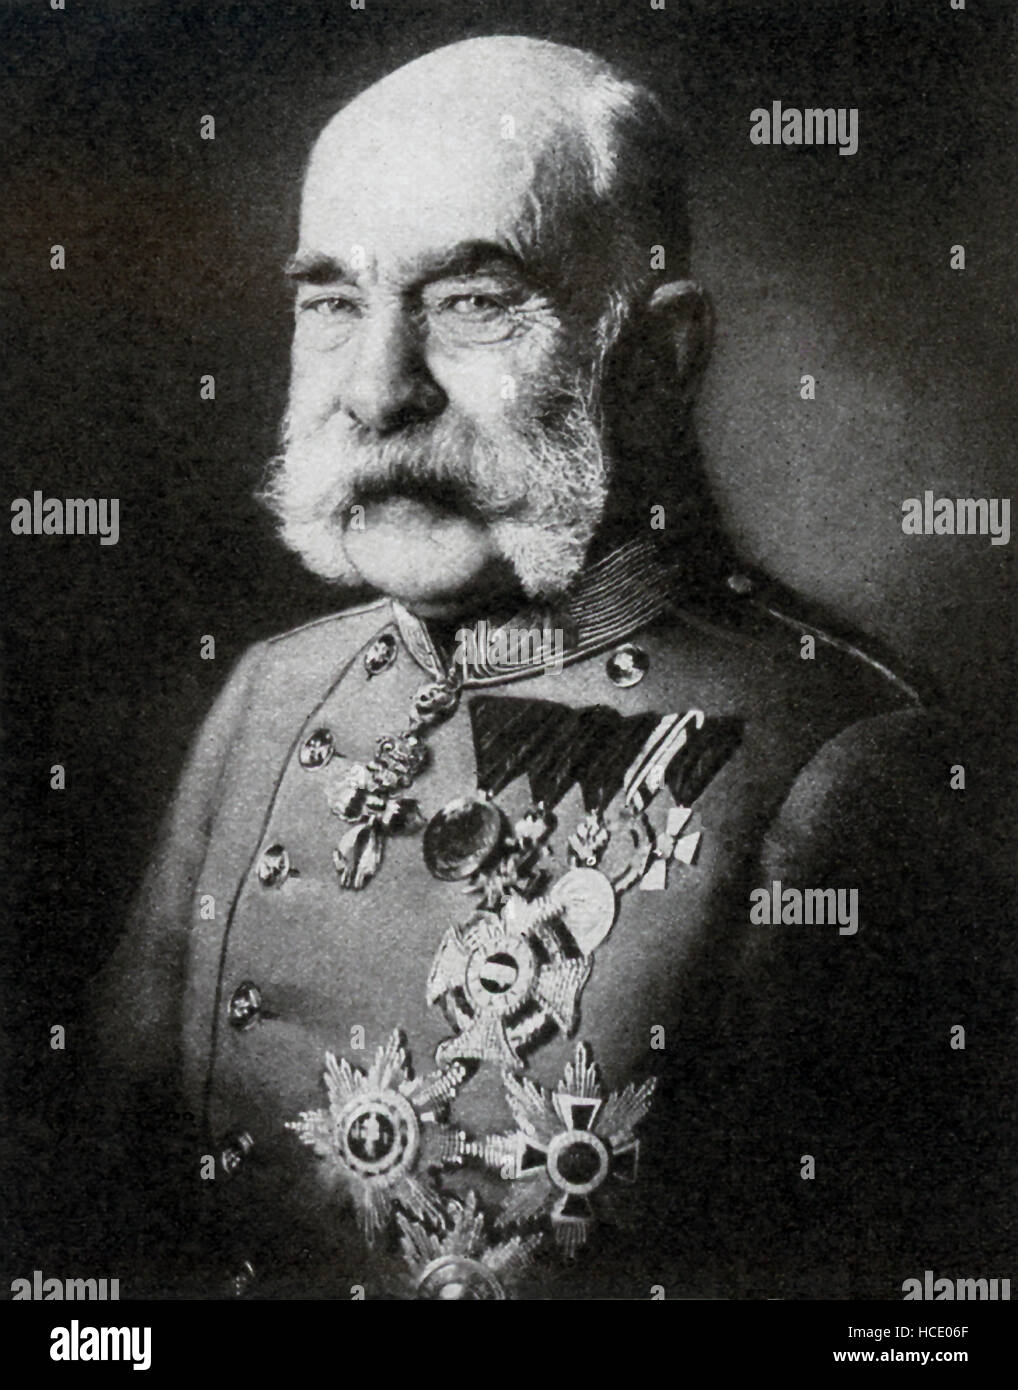 Dieses Foto des österreichisch-ungarischen Monarchen Franz Josef datiert  1917. Franz Josef war ich der Kaiser